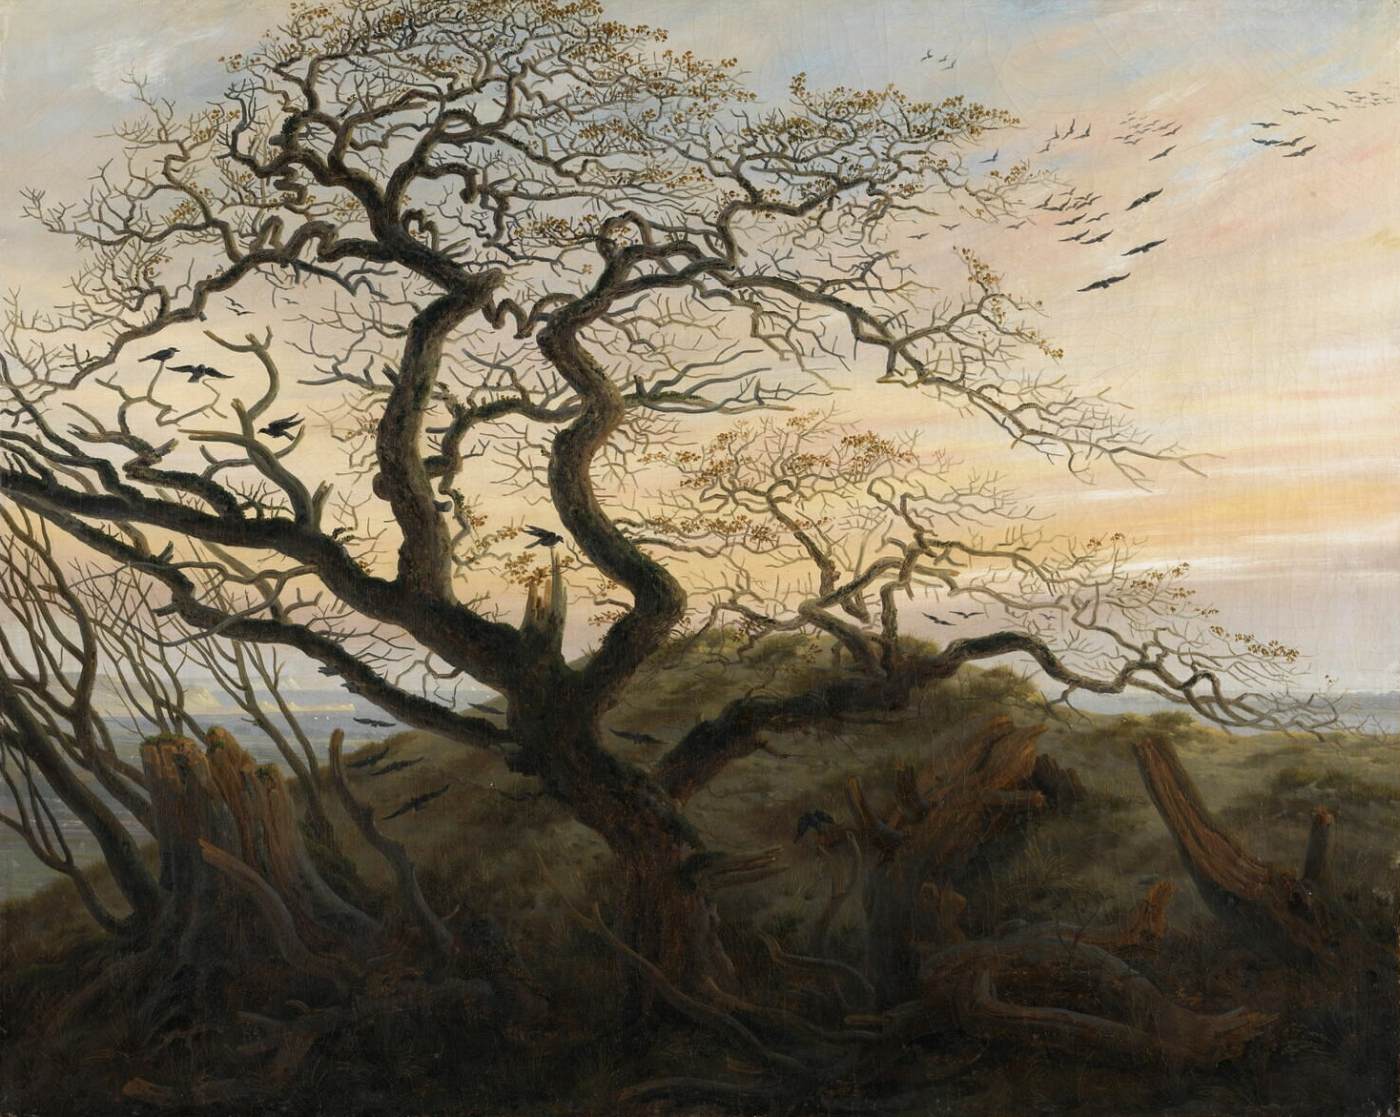 L'arbre des corbeaux